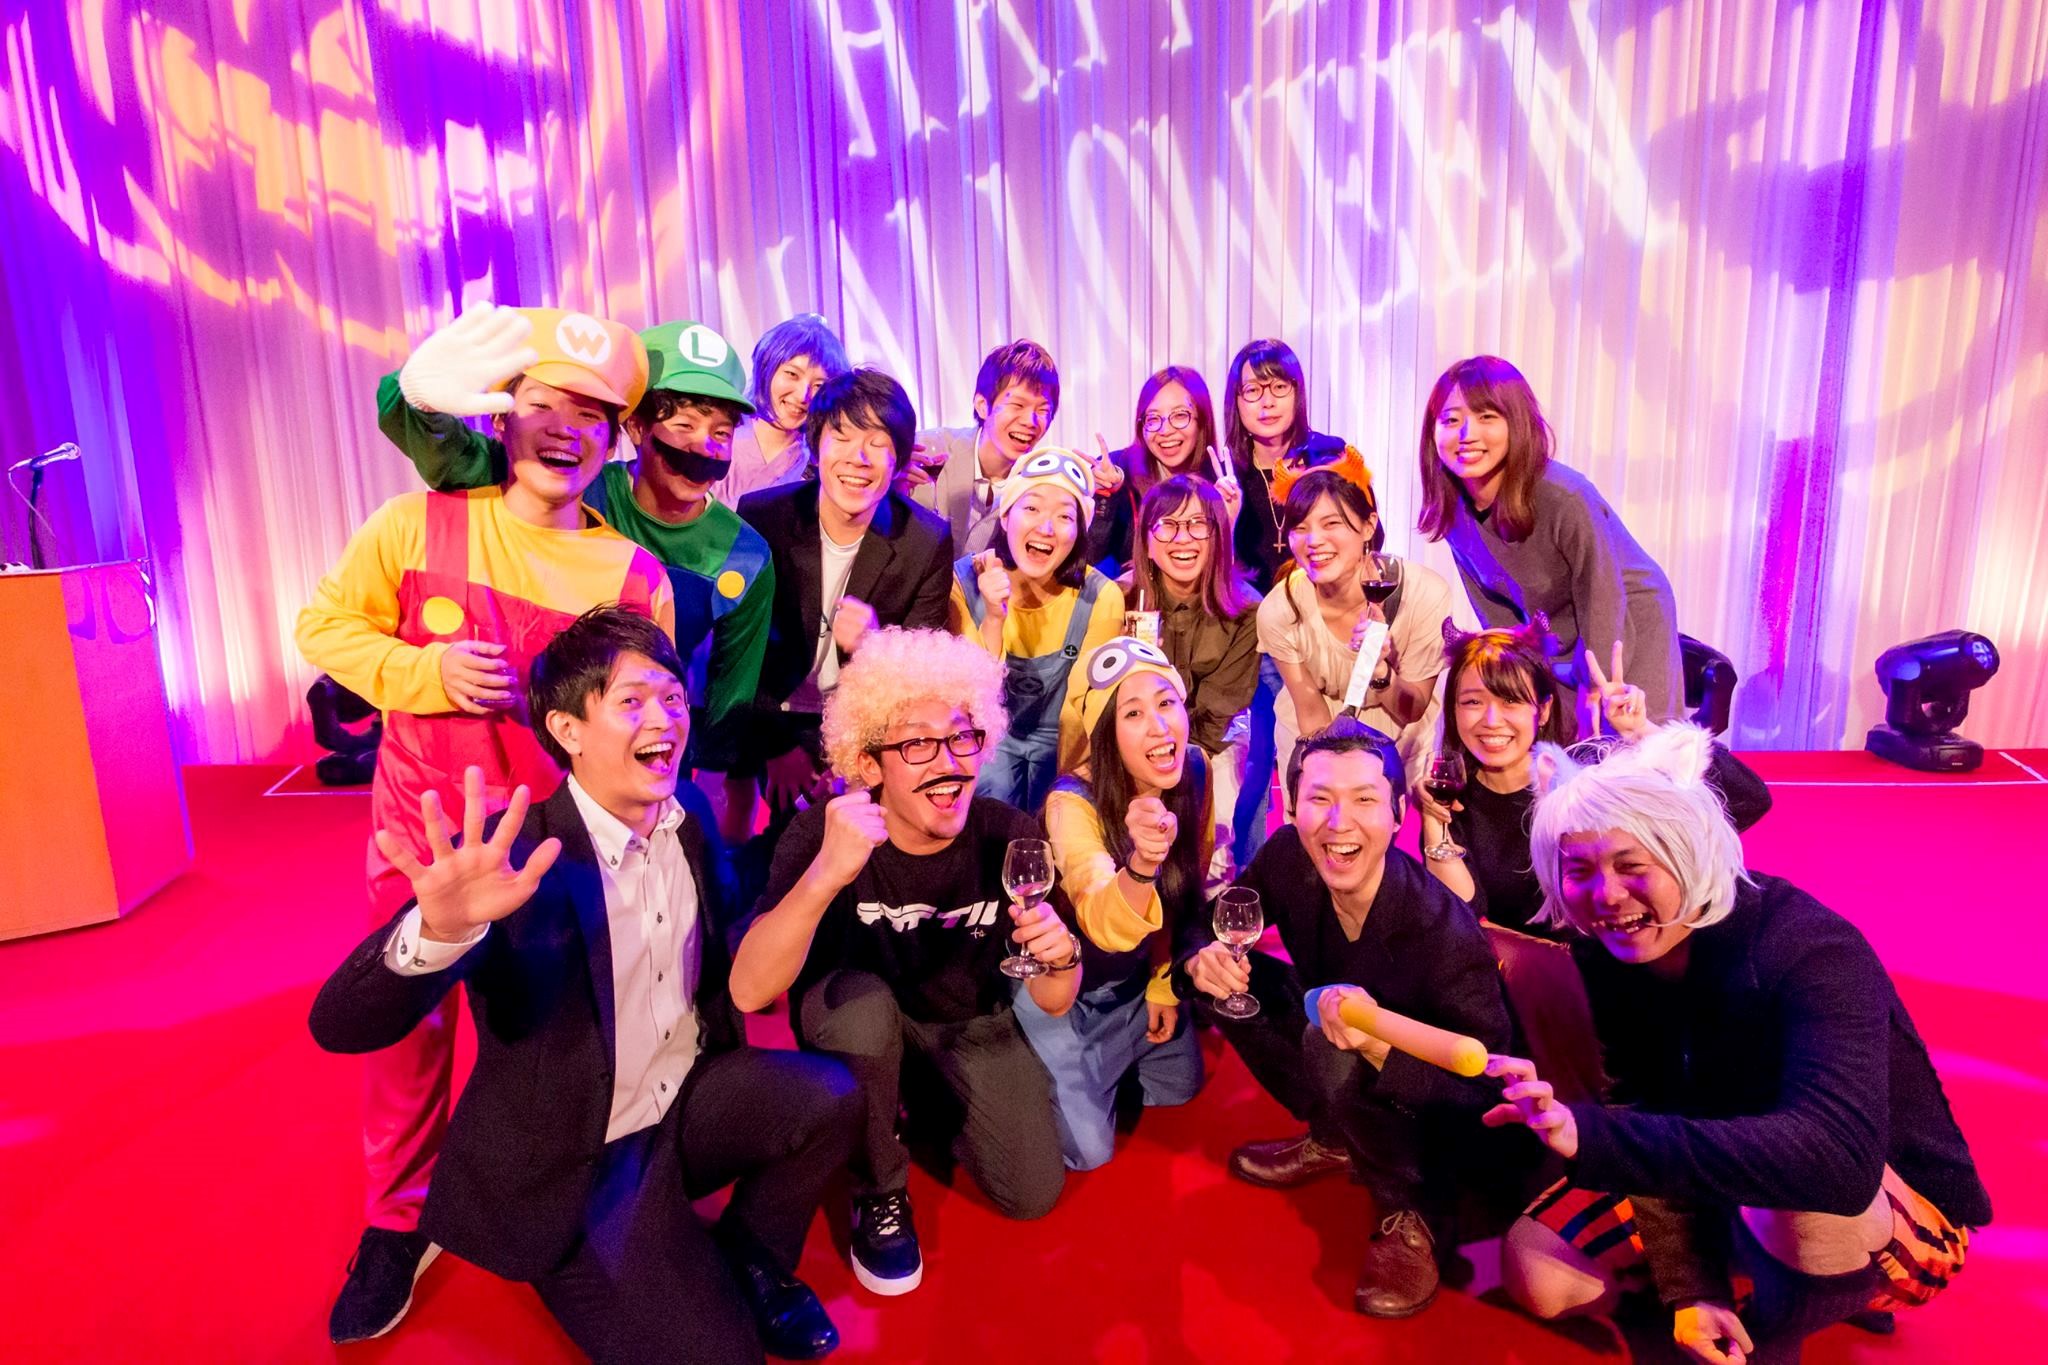 【アンパンマン】渋谷ヒカリエに入ってるベンチャー企業のハロウィンパーティーがガチすぎる件【サザエさん】